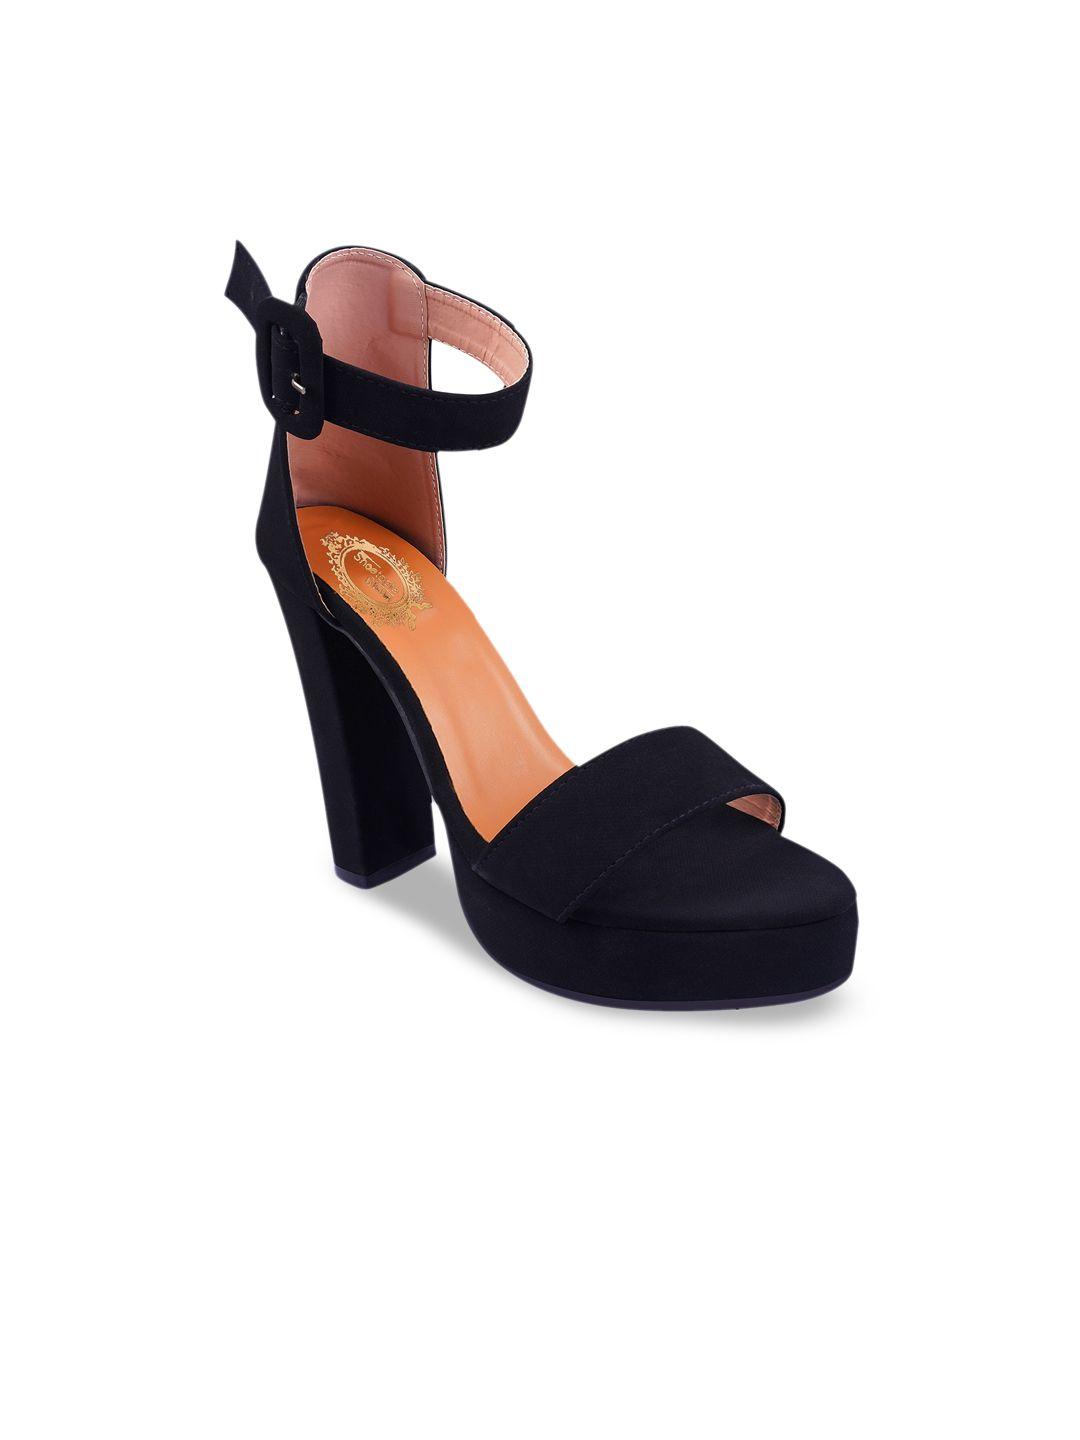 shoetopia black suede block heels